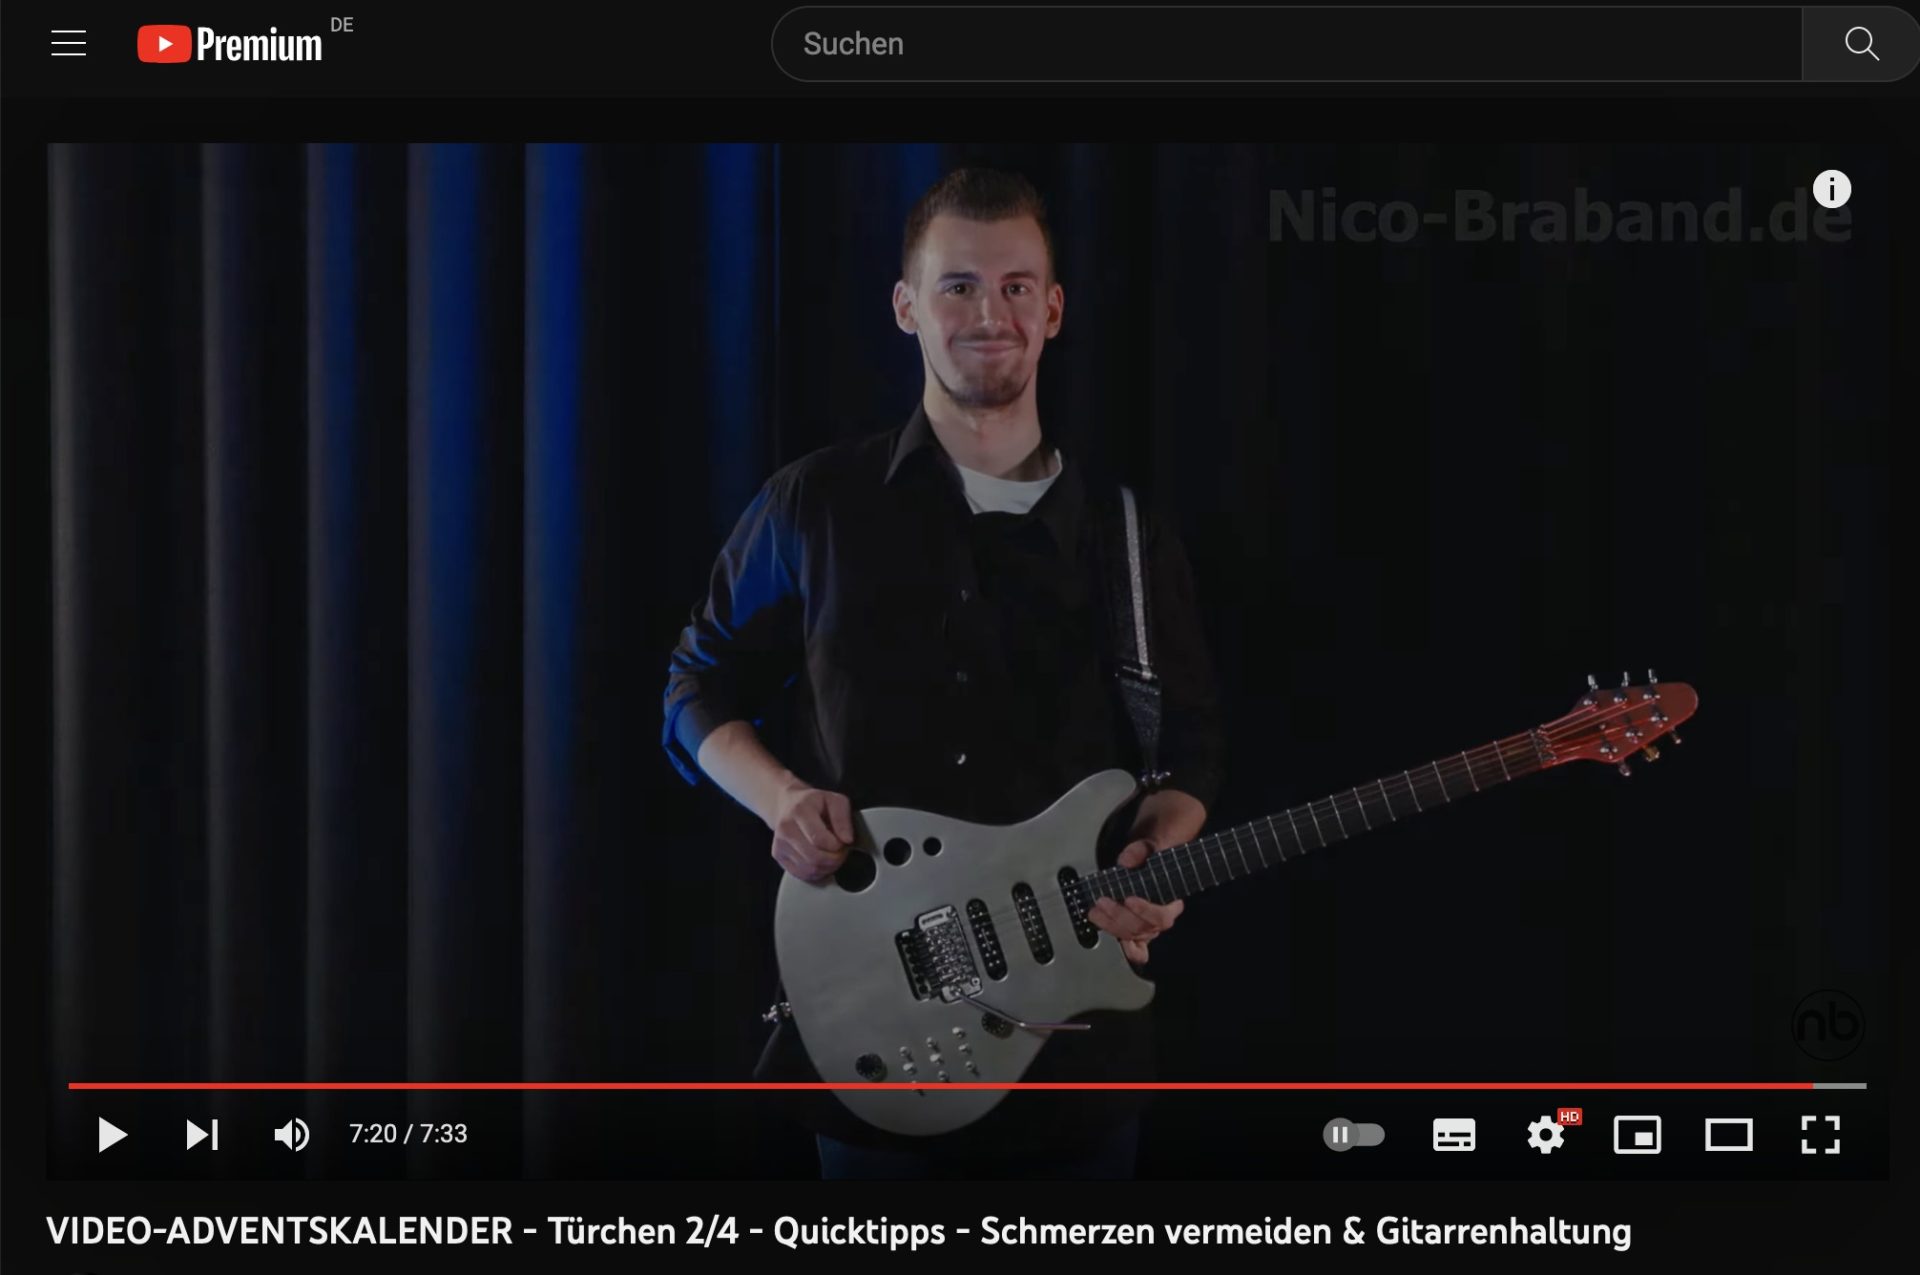 Adventskalender mit Videos zum Thema Gitarre Lernen von Nico Braband